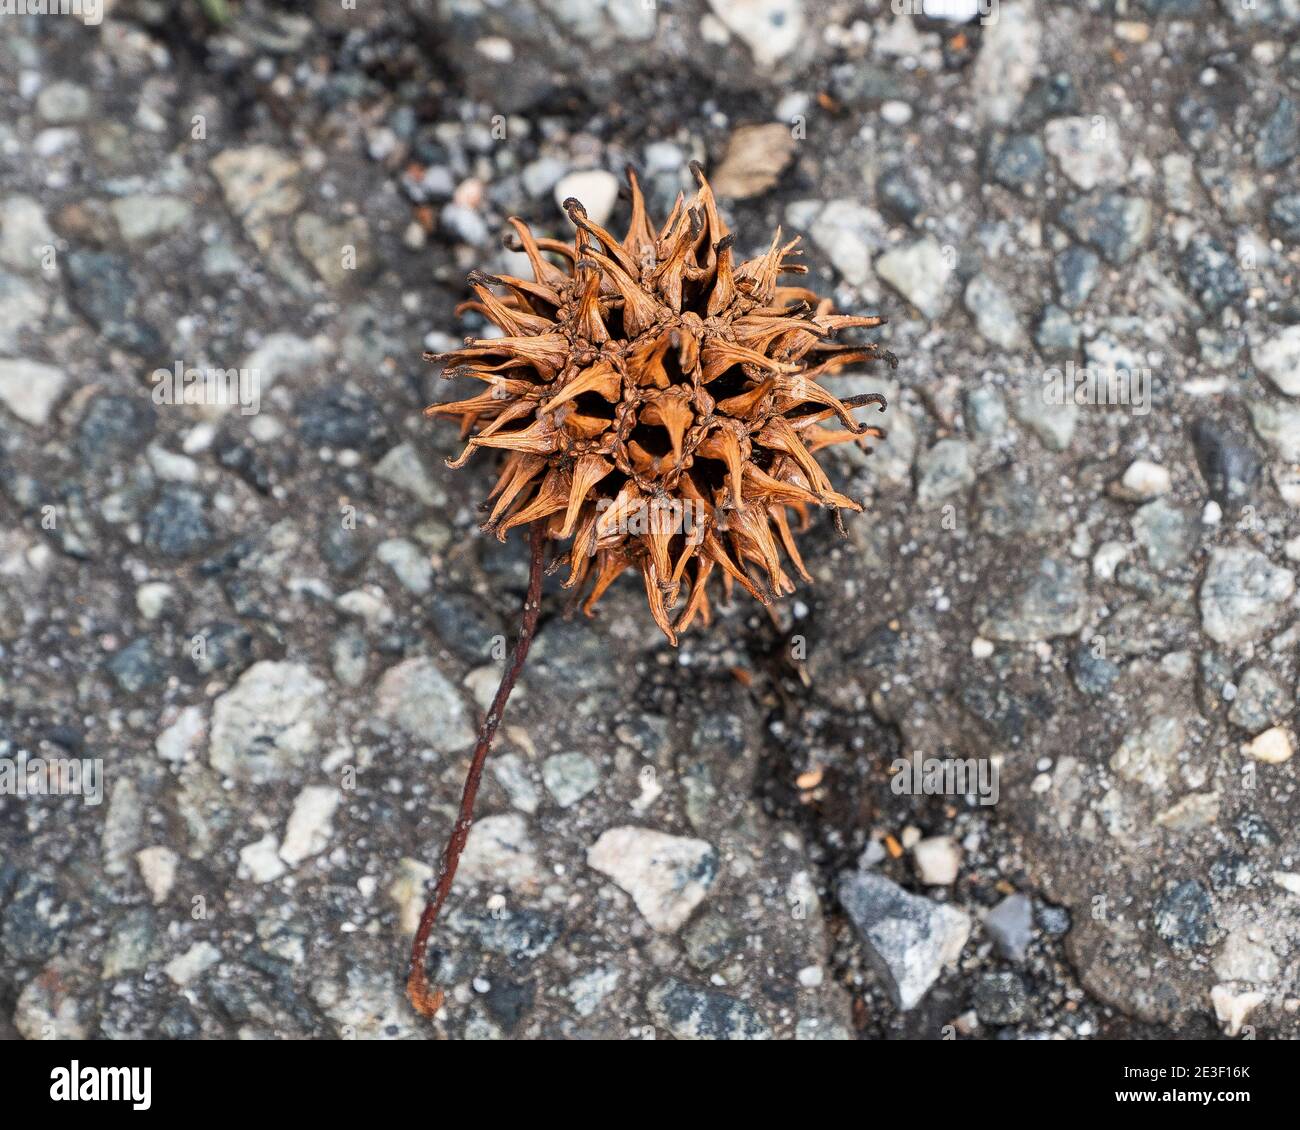 Albero palla spiky immagini e fotografie stock ad alta risoluzione - Alamy